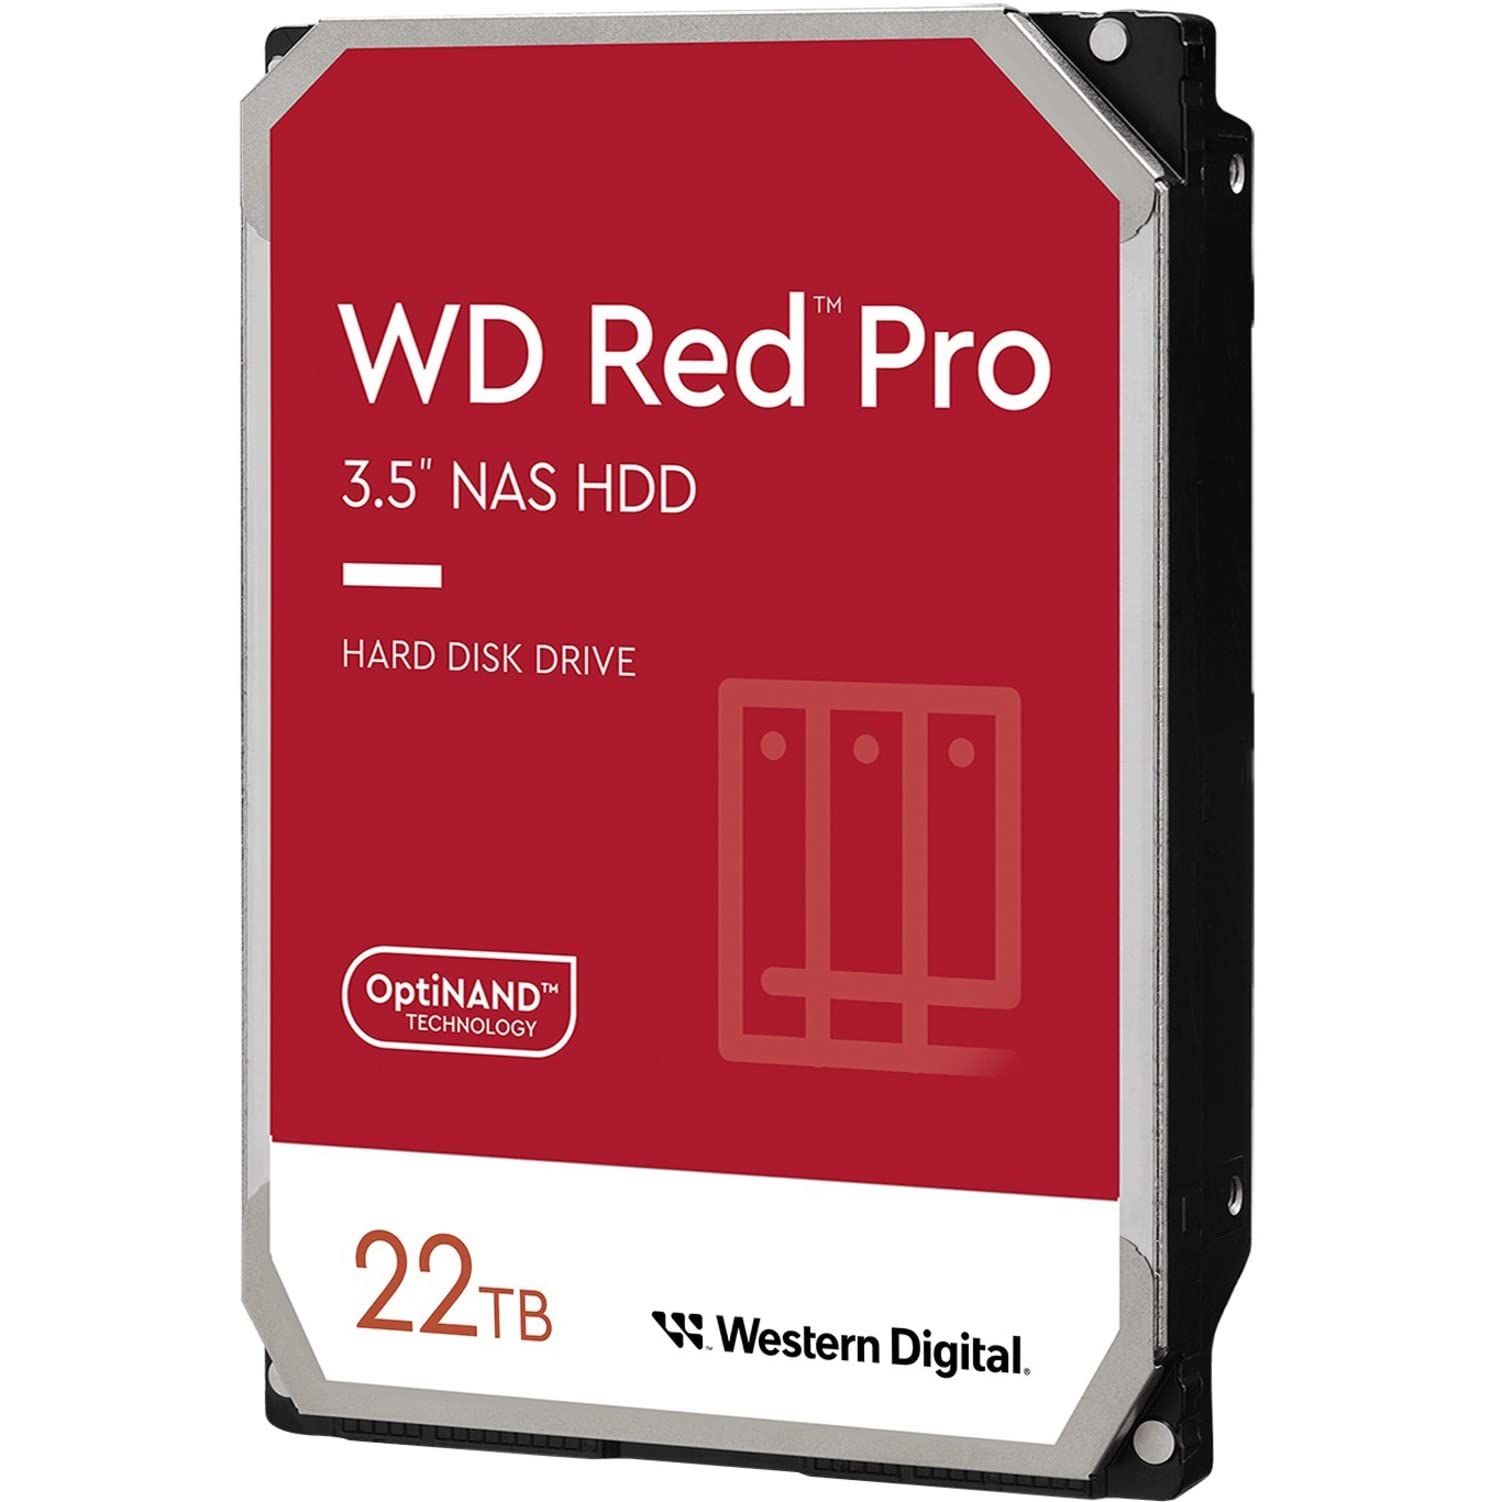 Western Digital 22TB WD Red Pro NAS Internal Hard Drive HDD - 7200 RPM, SATA 6 Gb/s, CMR, 512 MB Cache, 3.5